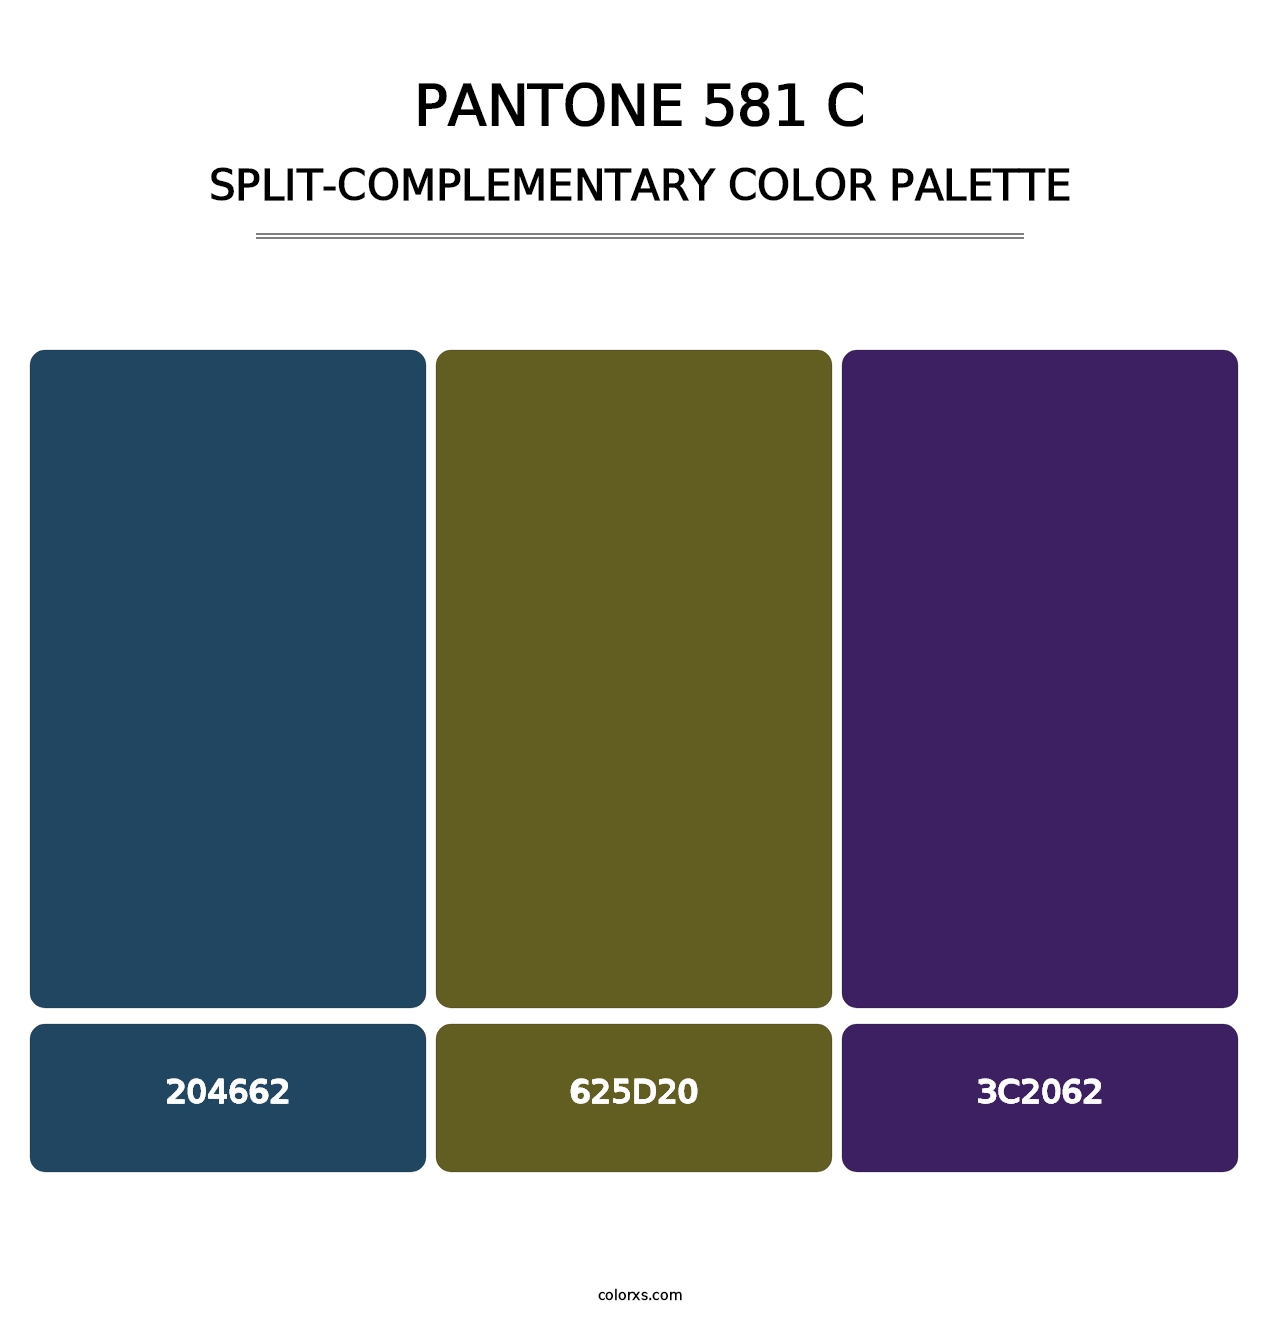 PANTONE 581 C - Split-Complementary Color Palette